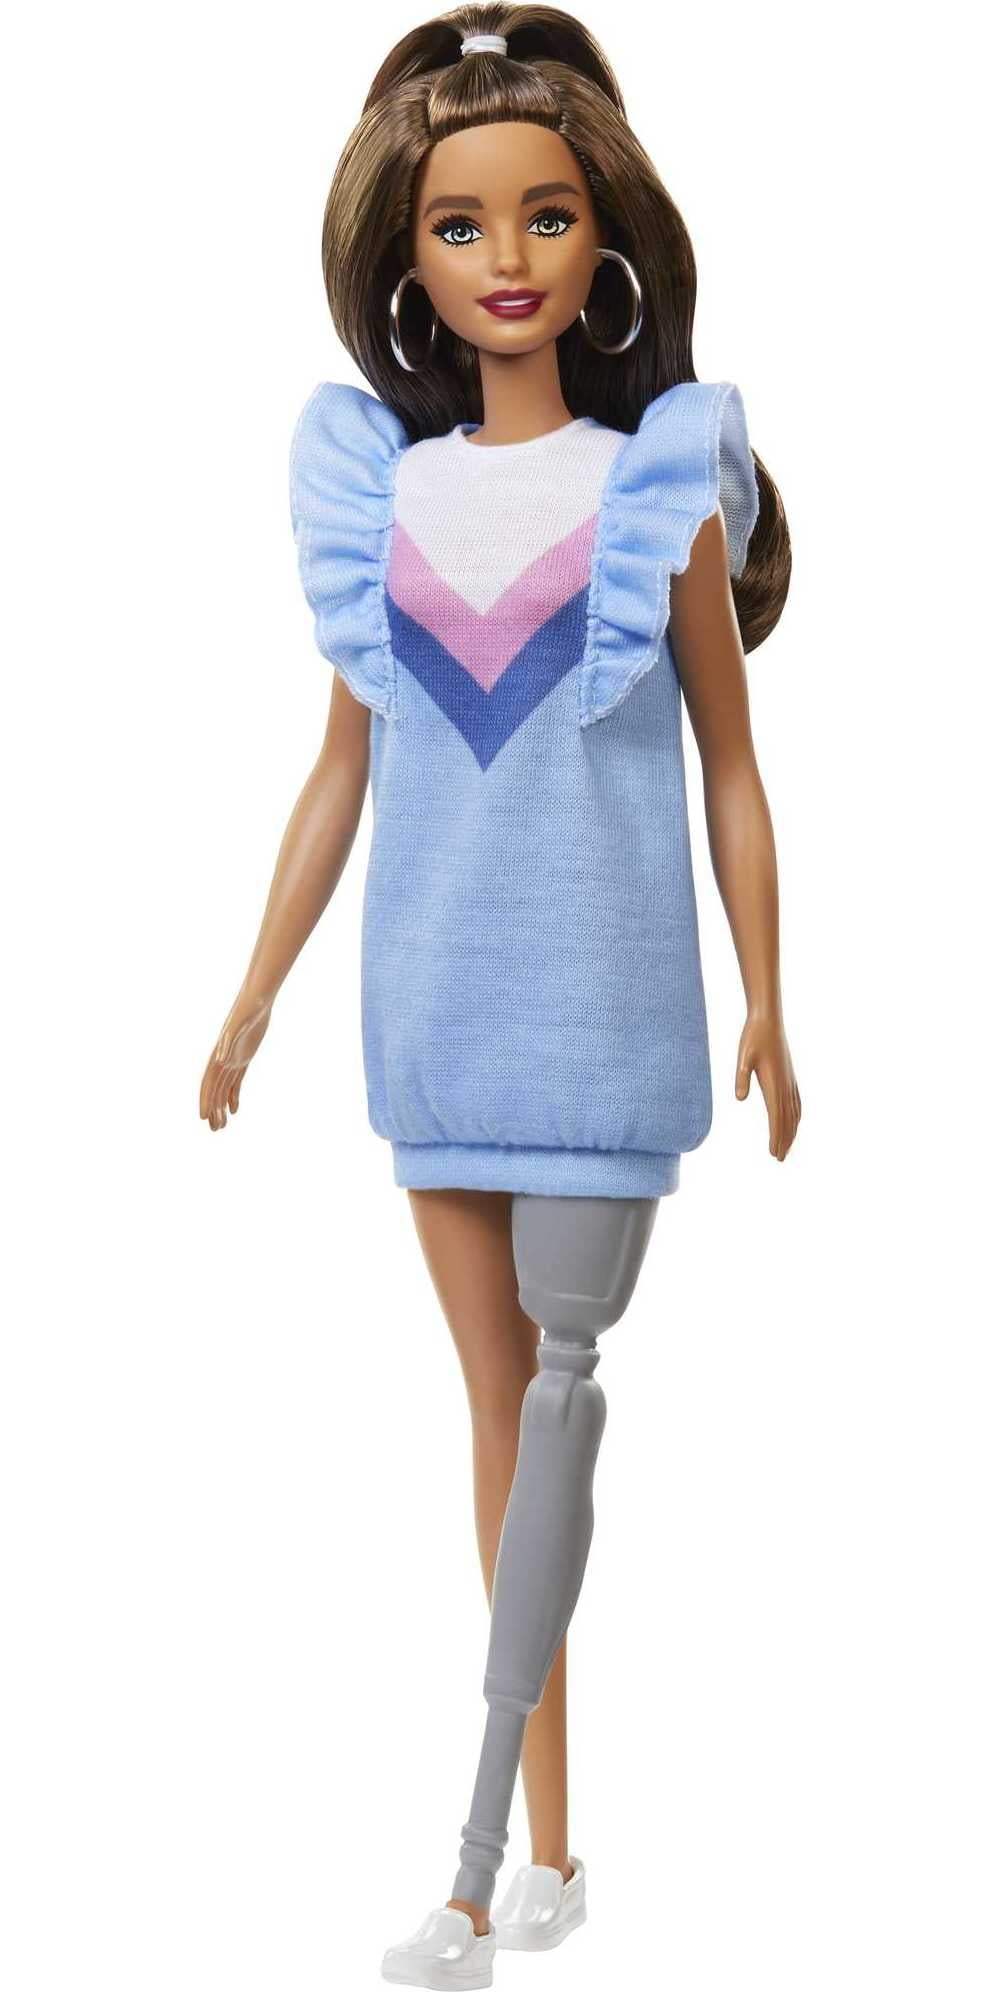 Poupée Barbie avec de longs cheveux bruns et Prosthetic Leg Fashionistas #121 para 